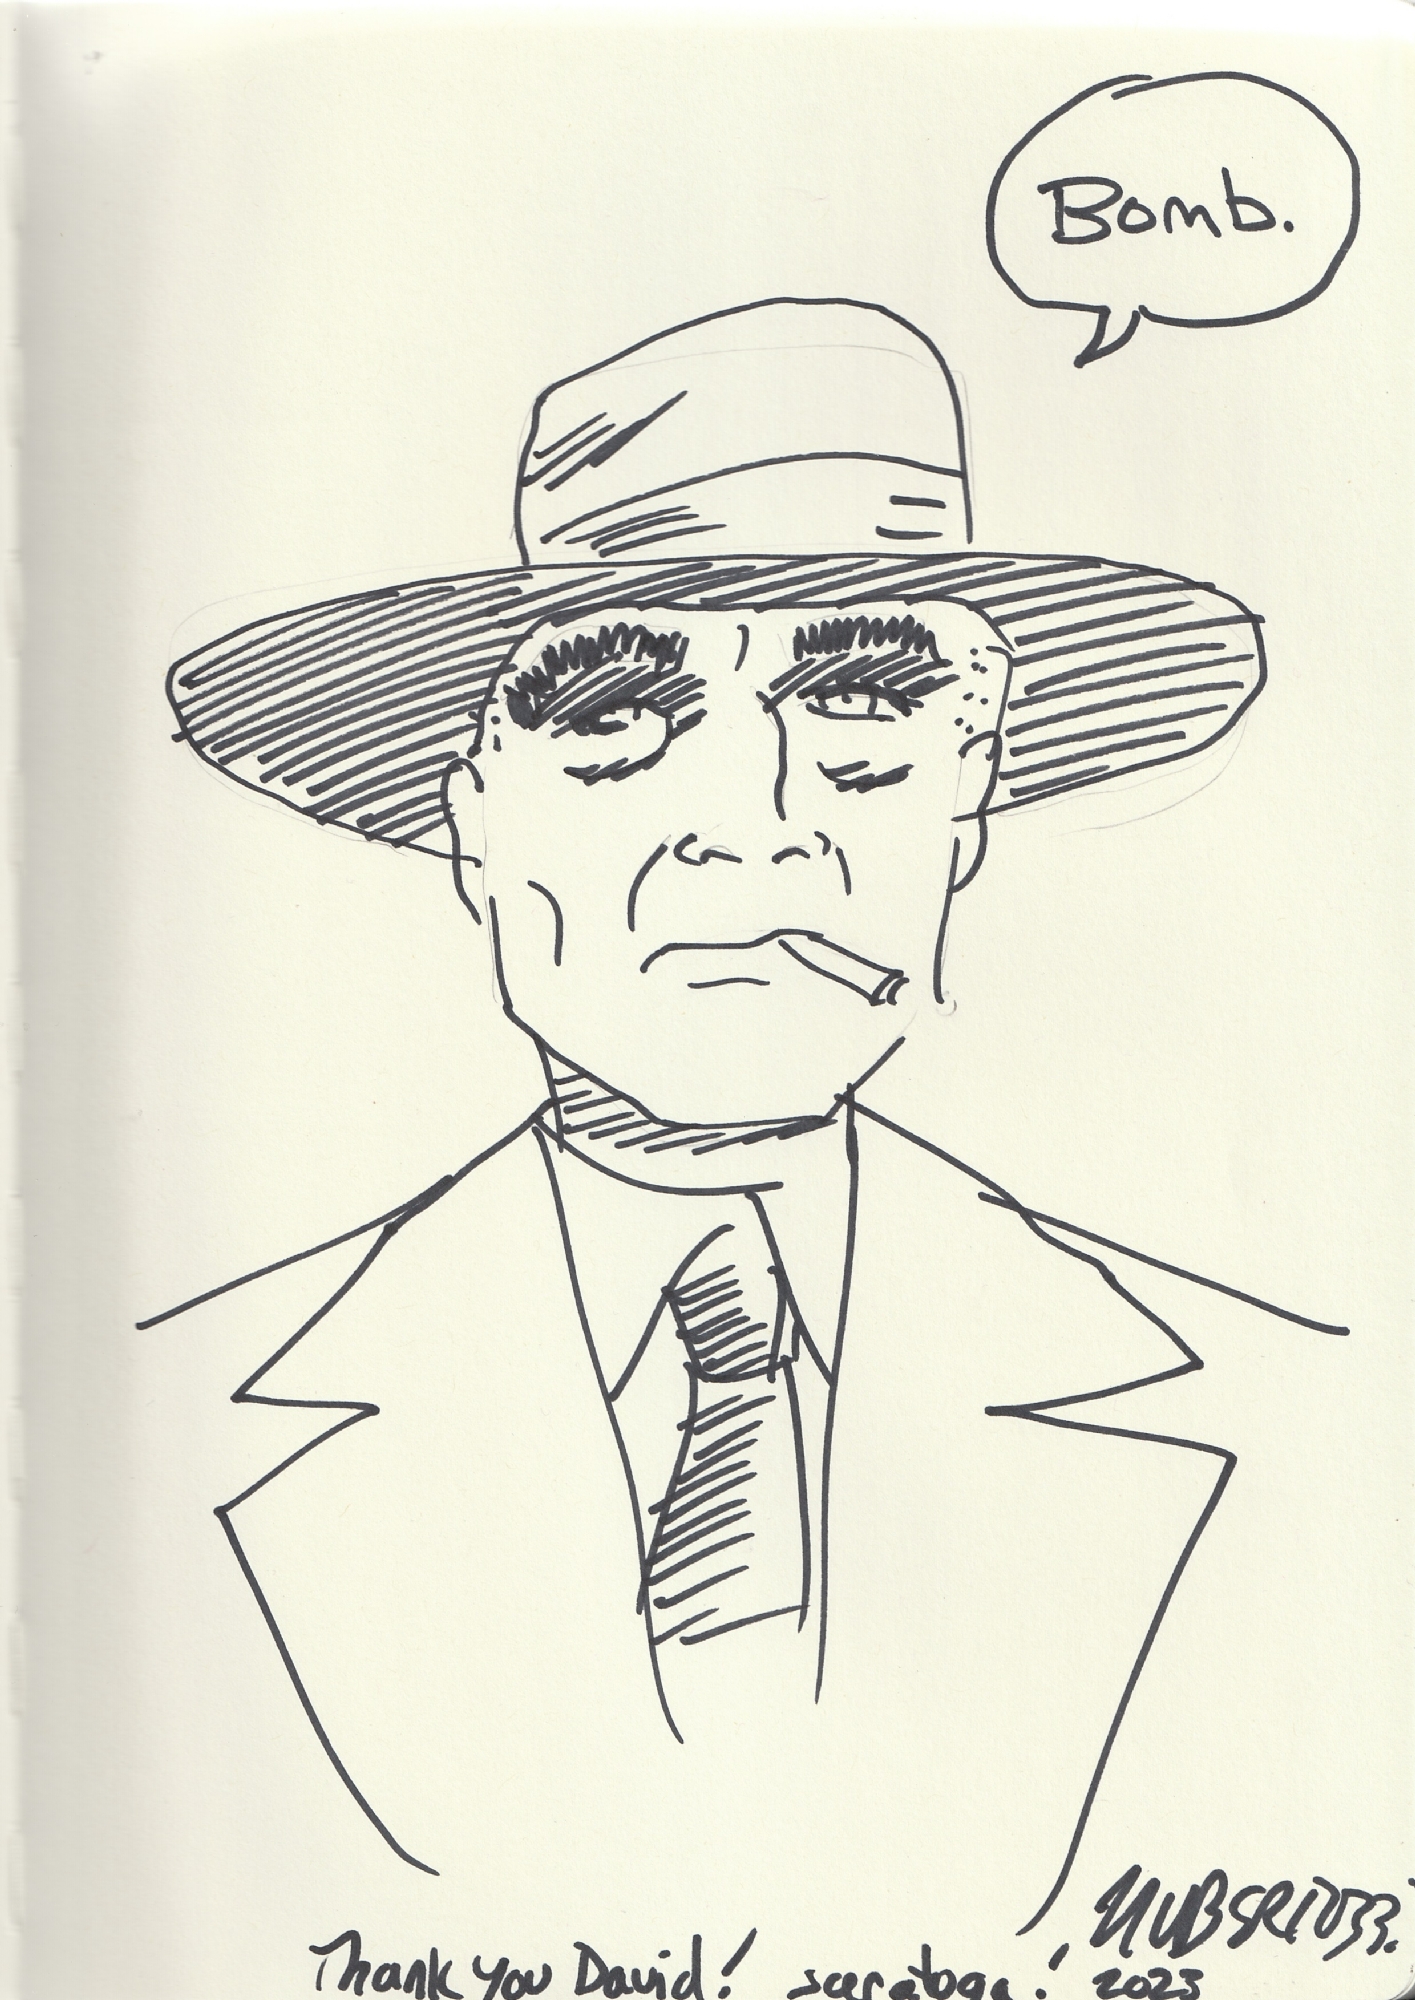 J. Robert Oppenheimer sketch, in David D.'s Bertozzi, Nick Comic Art